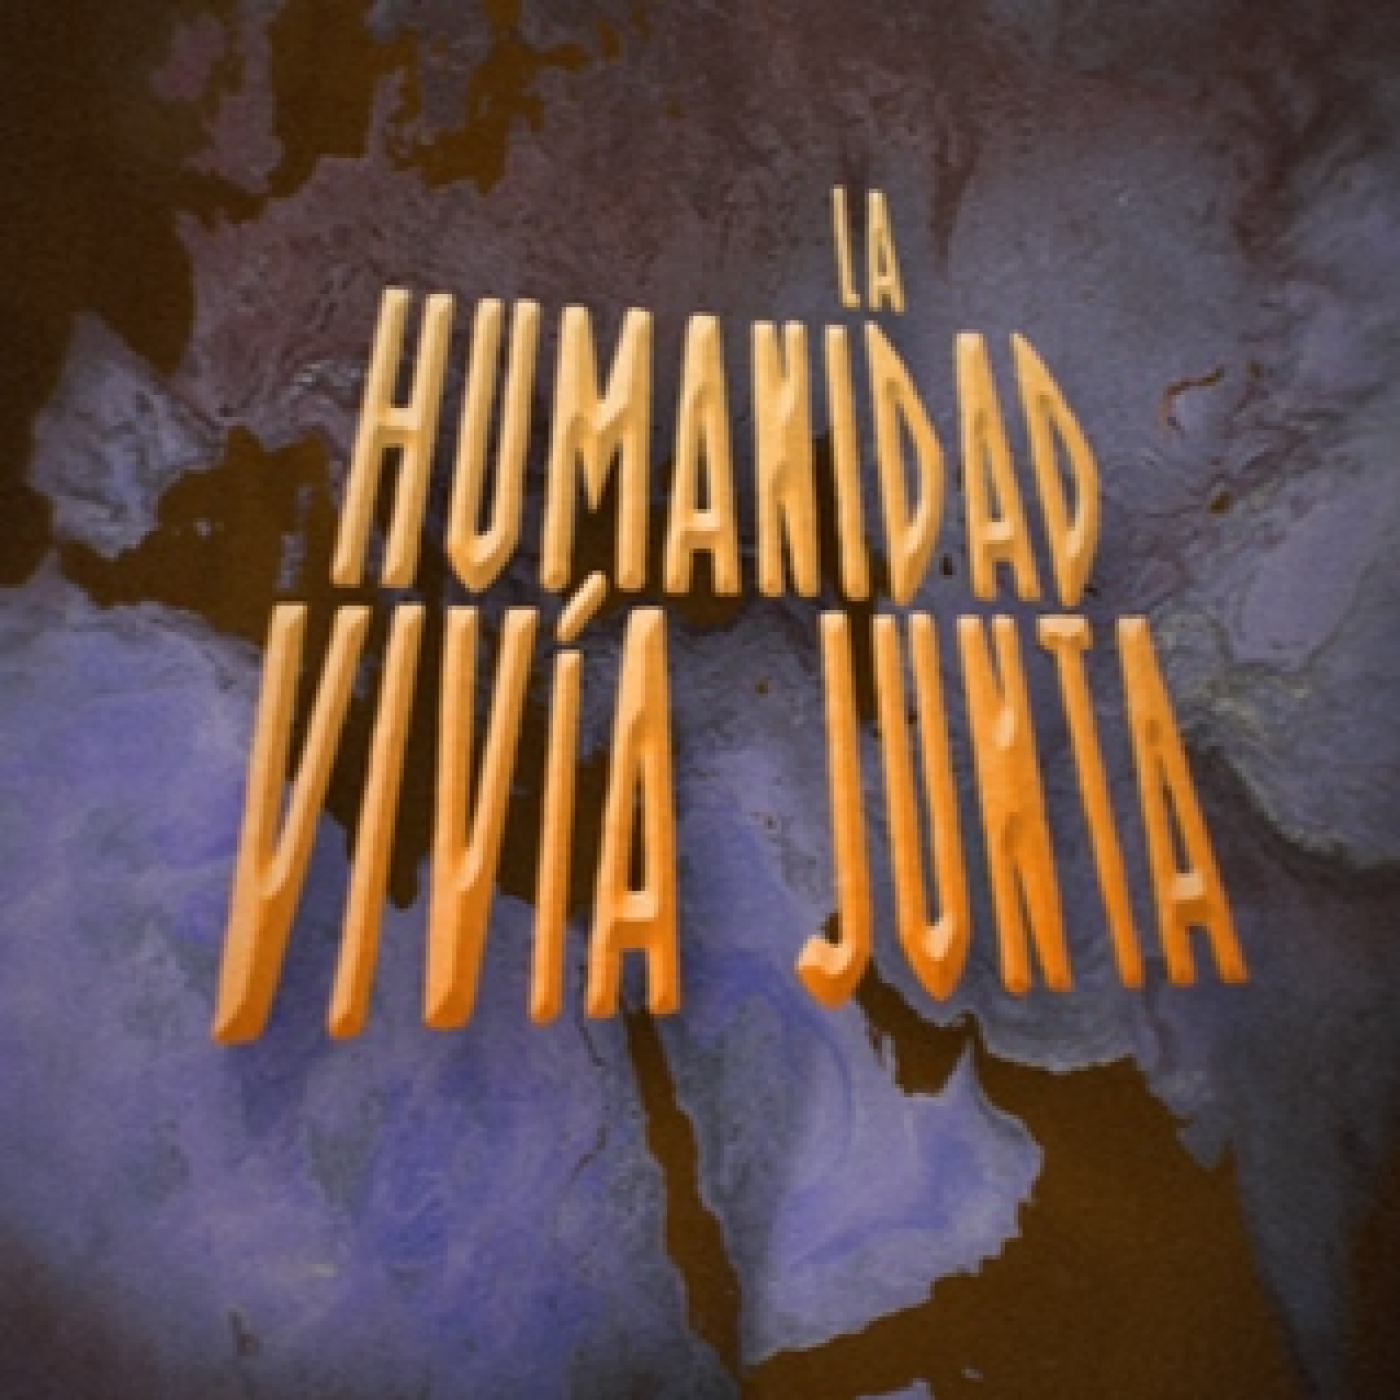 Cuarto Milenio: La humanidad vivía junta